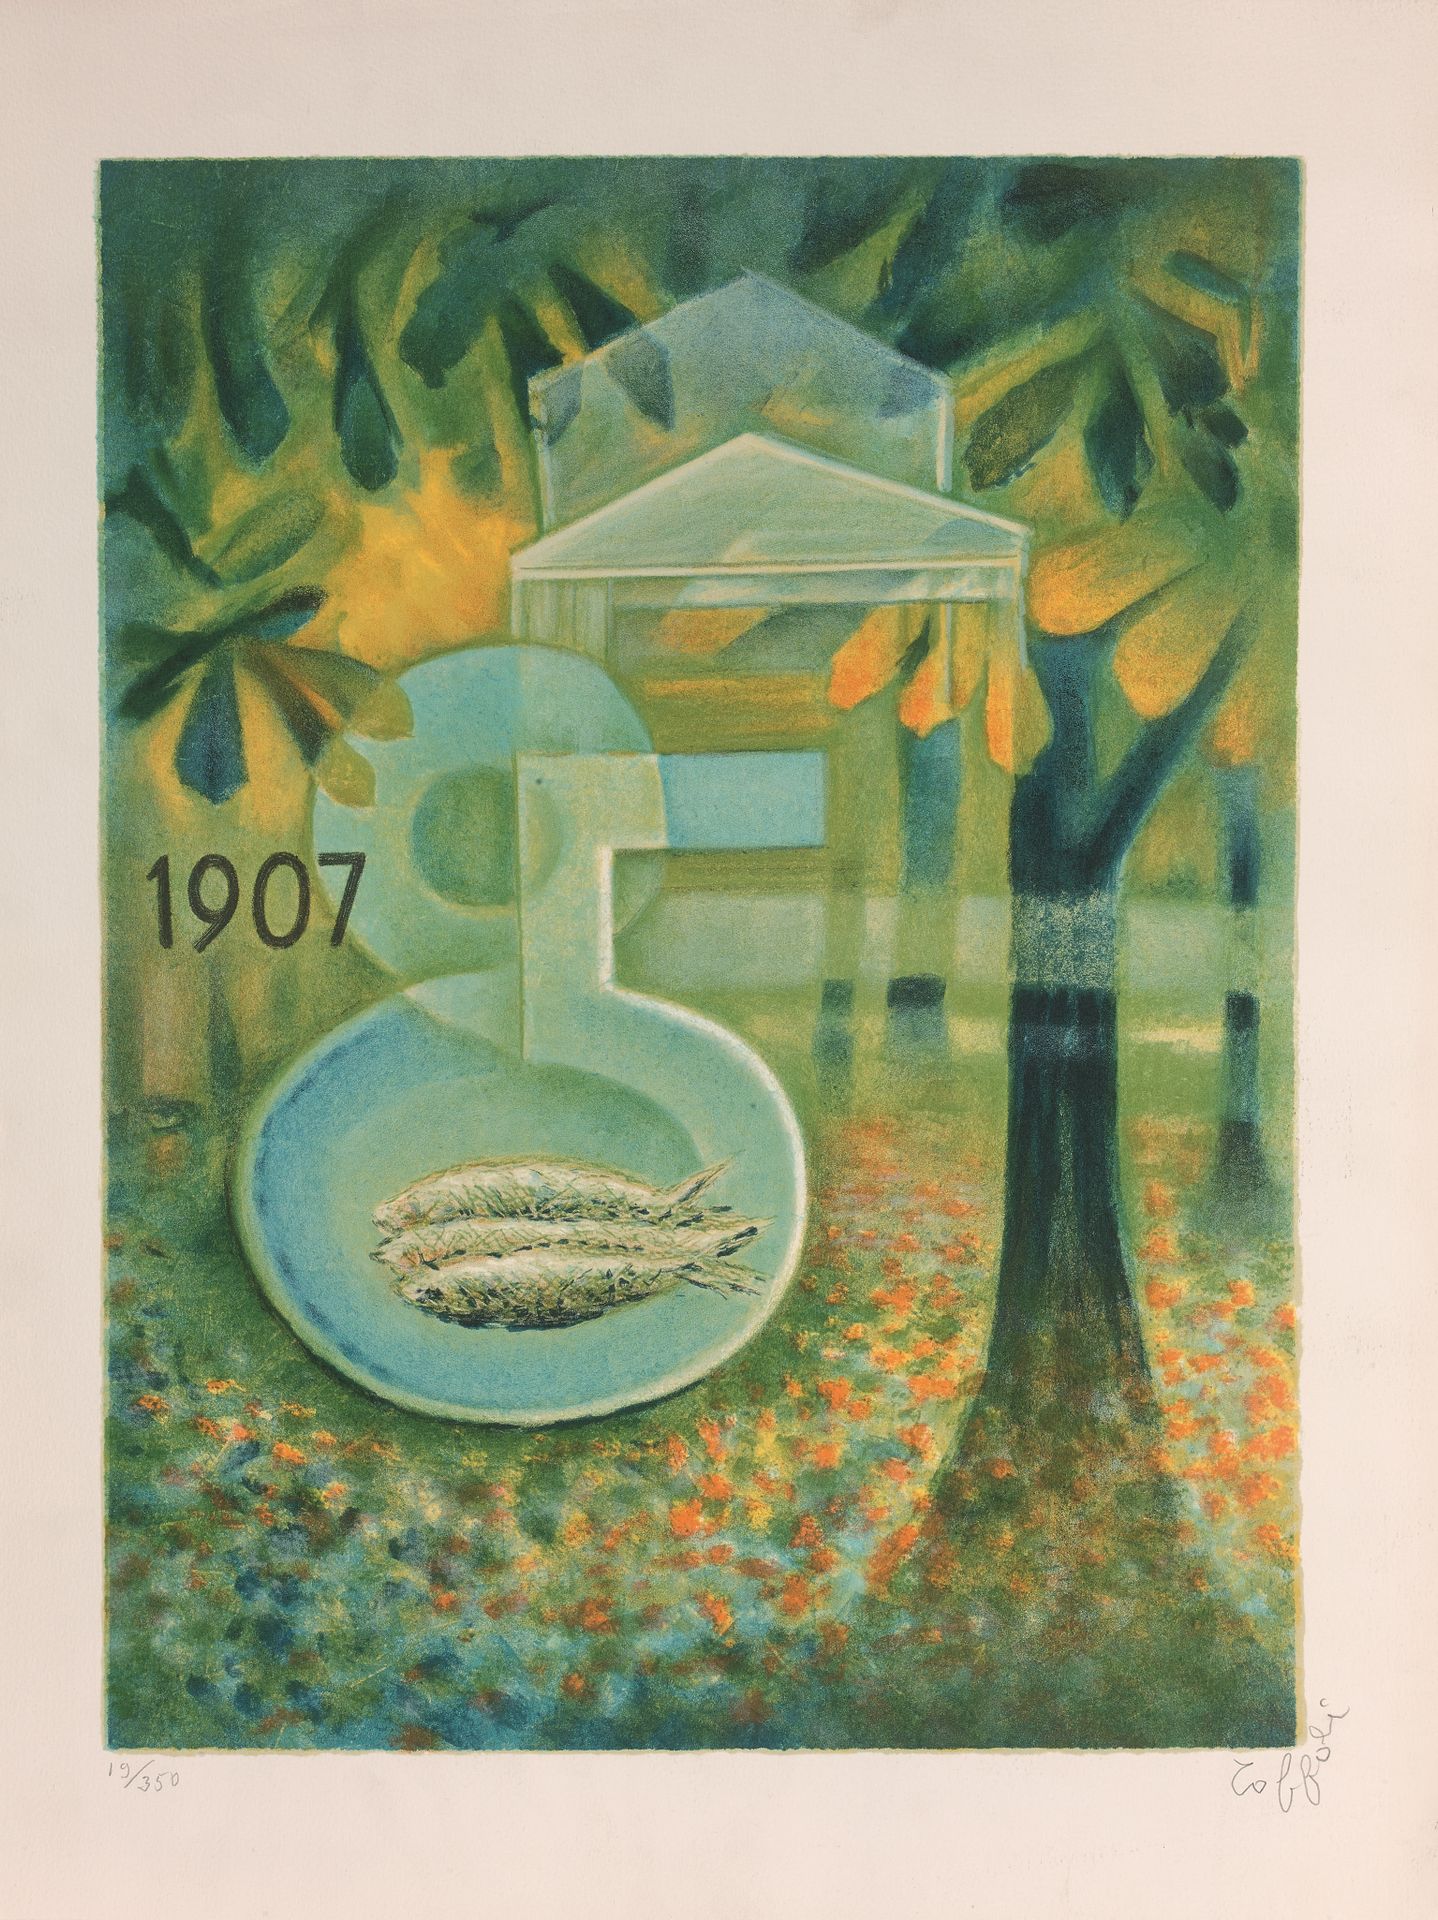 Louis TOFFOLI (1907-1999) Composición con plato de pescado
Litografía en color, &hellip;